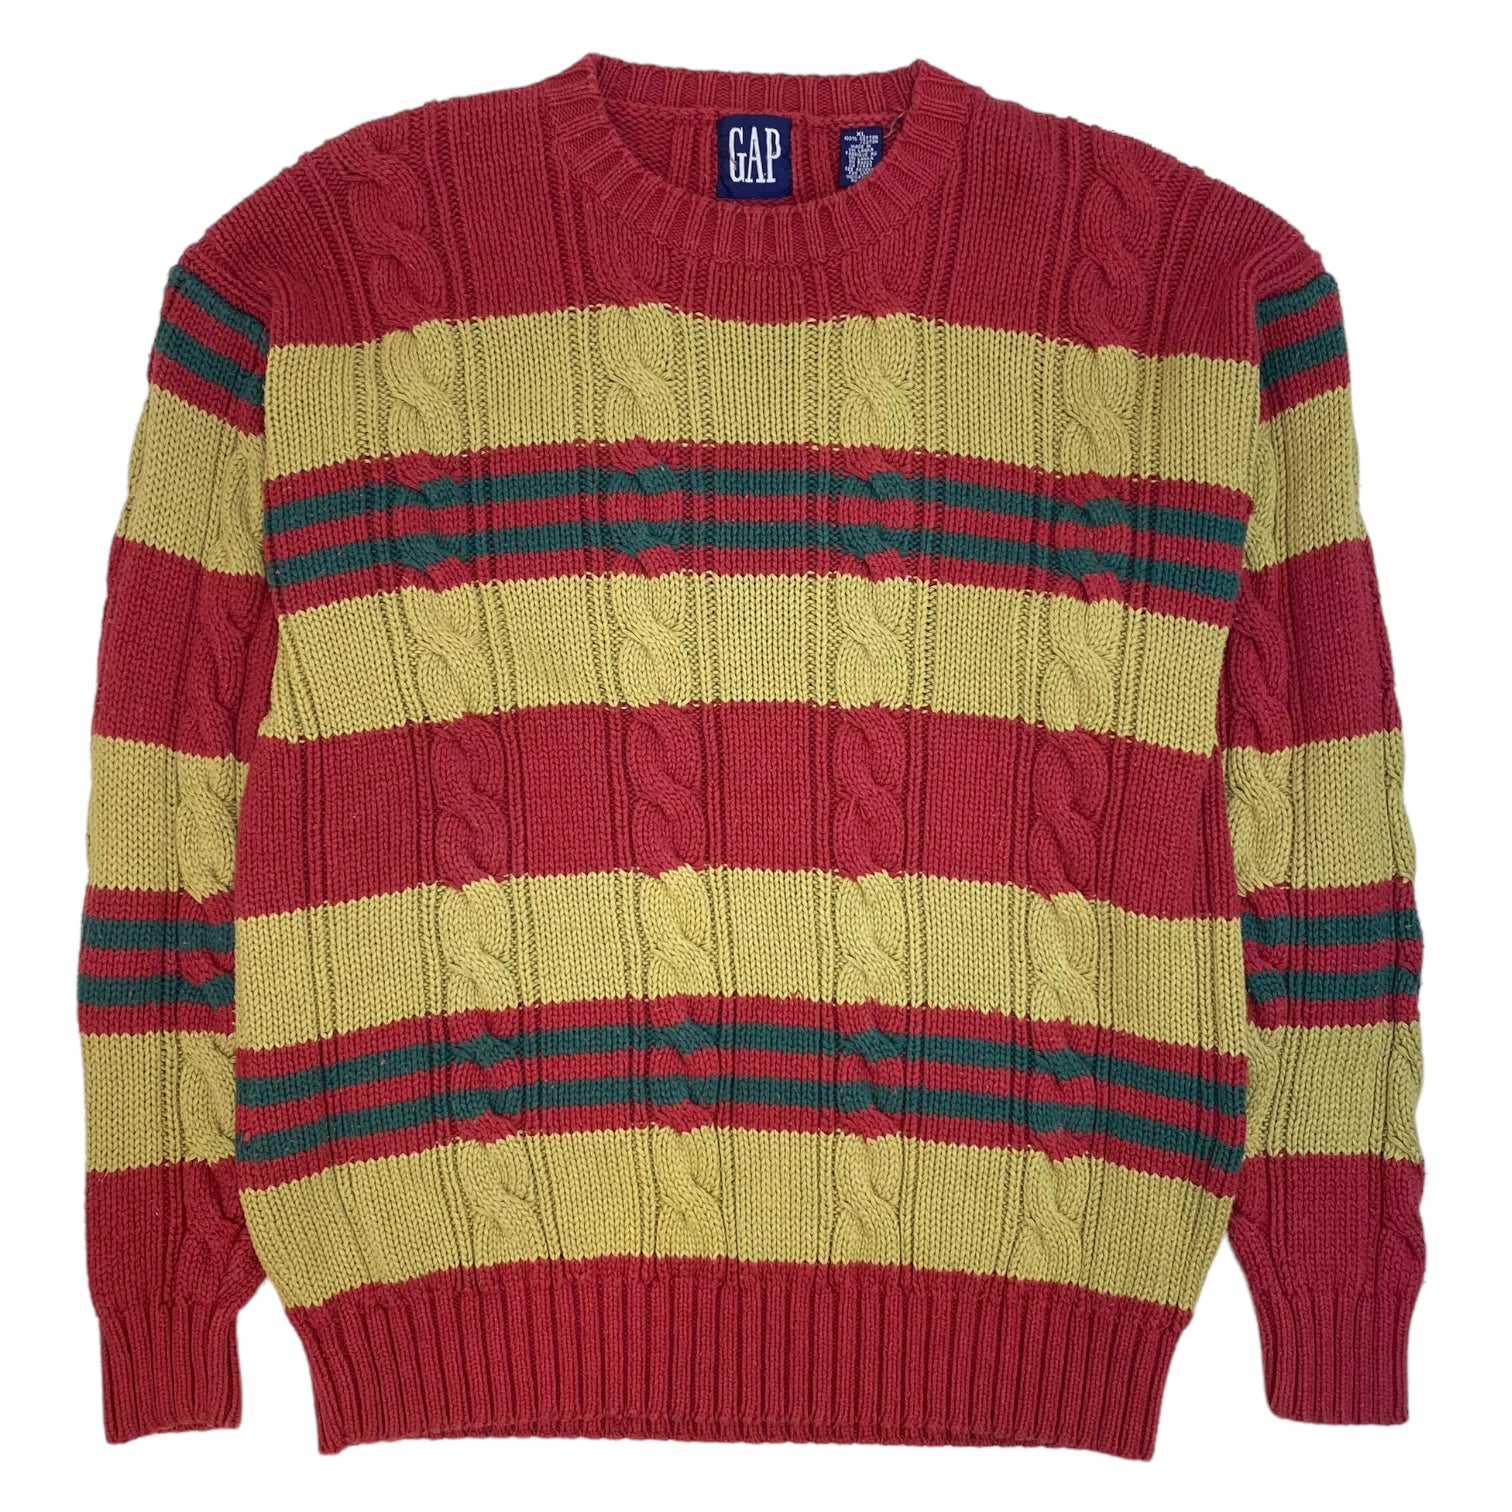 Vintage Gap Striped Knit Sweater